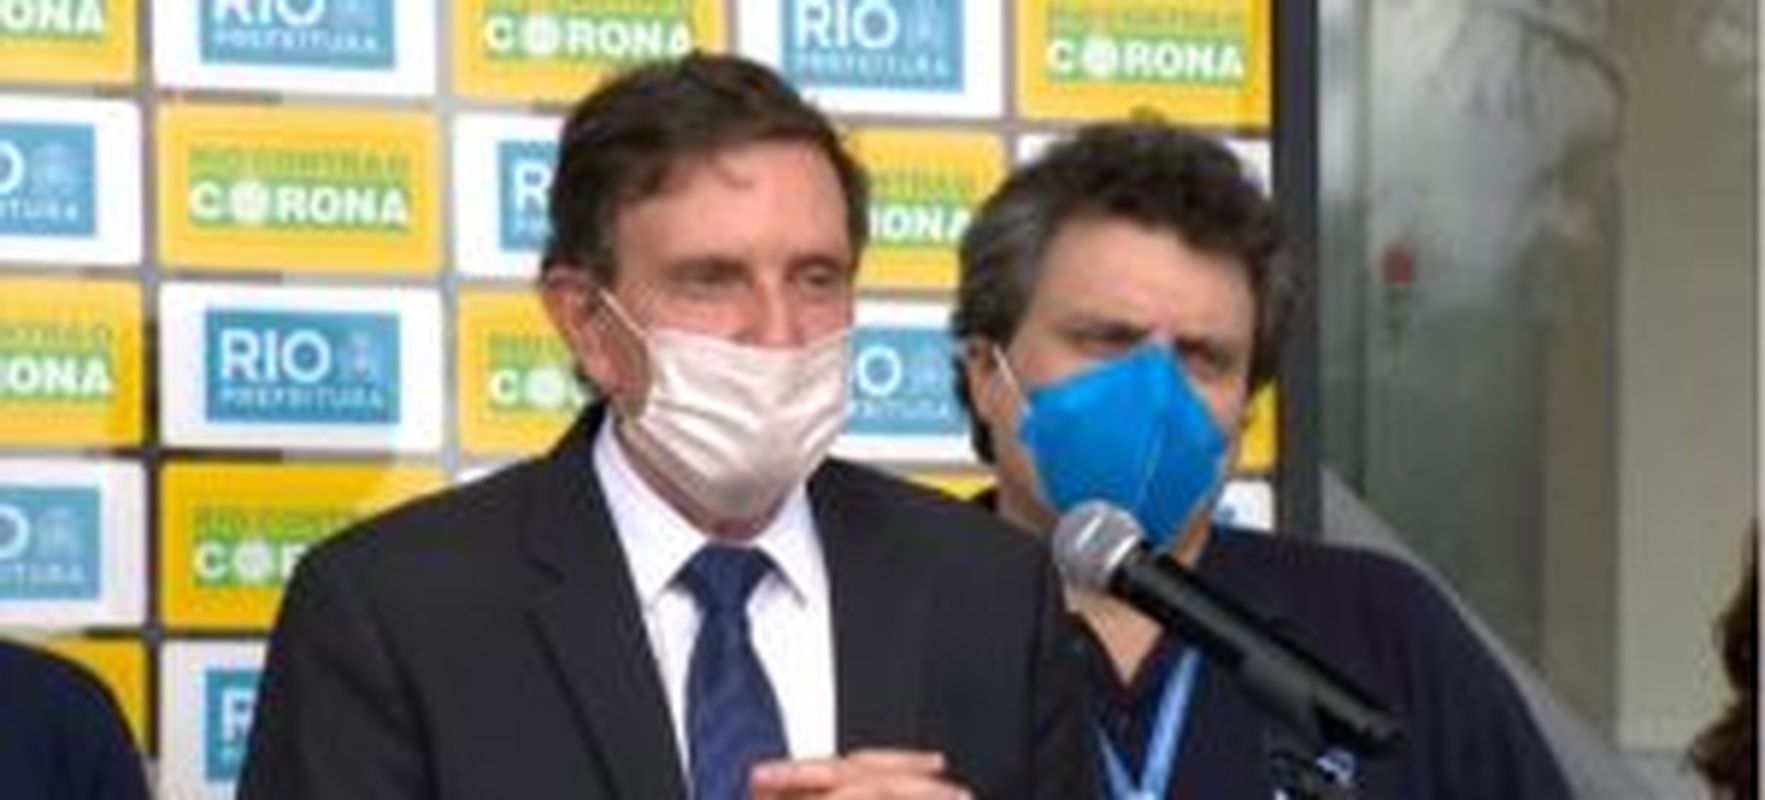 Corona Vírus: Crivella vai proibir a circulação de pessoas sem máscara na cidade